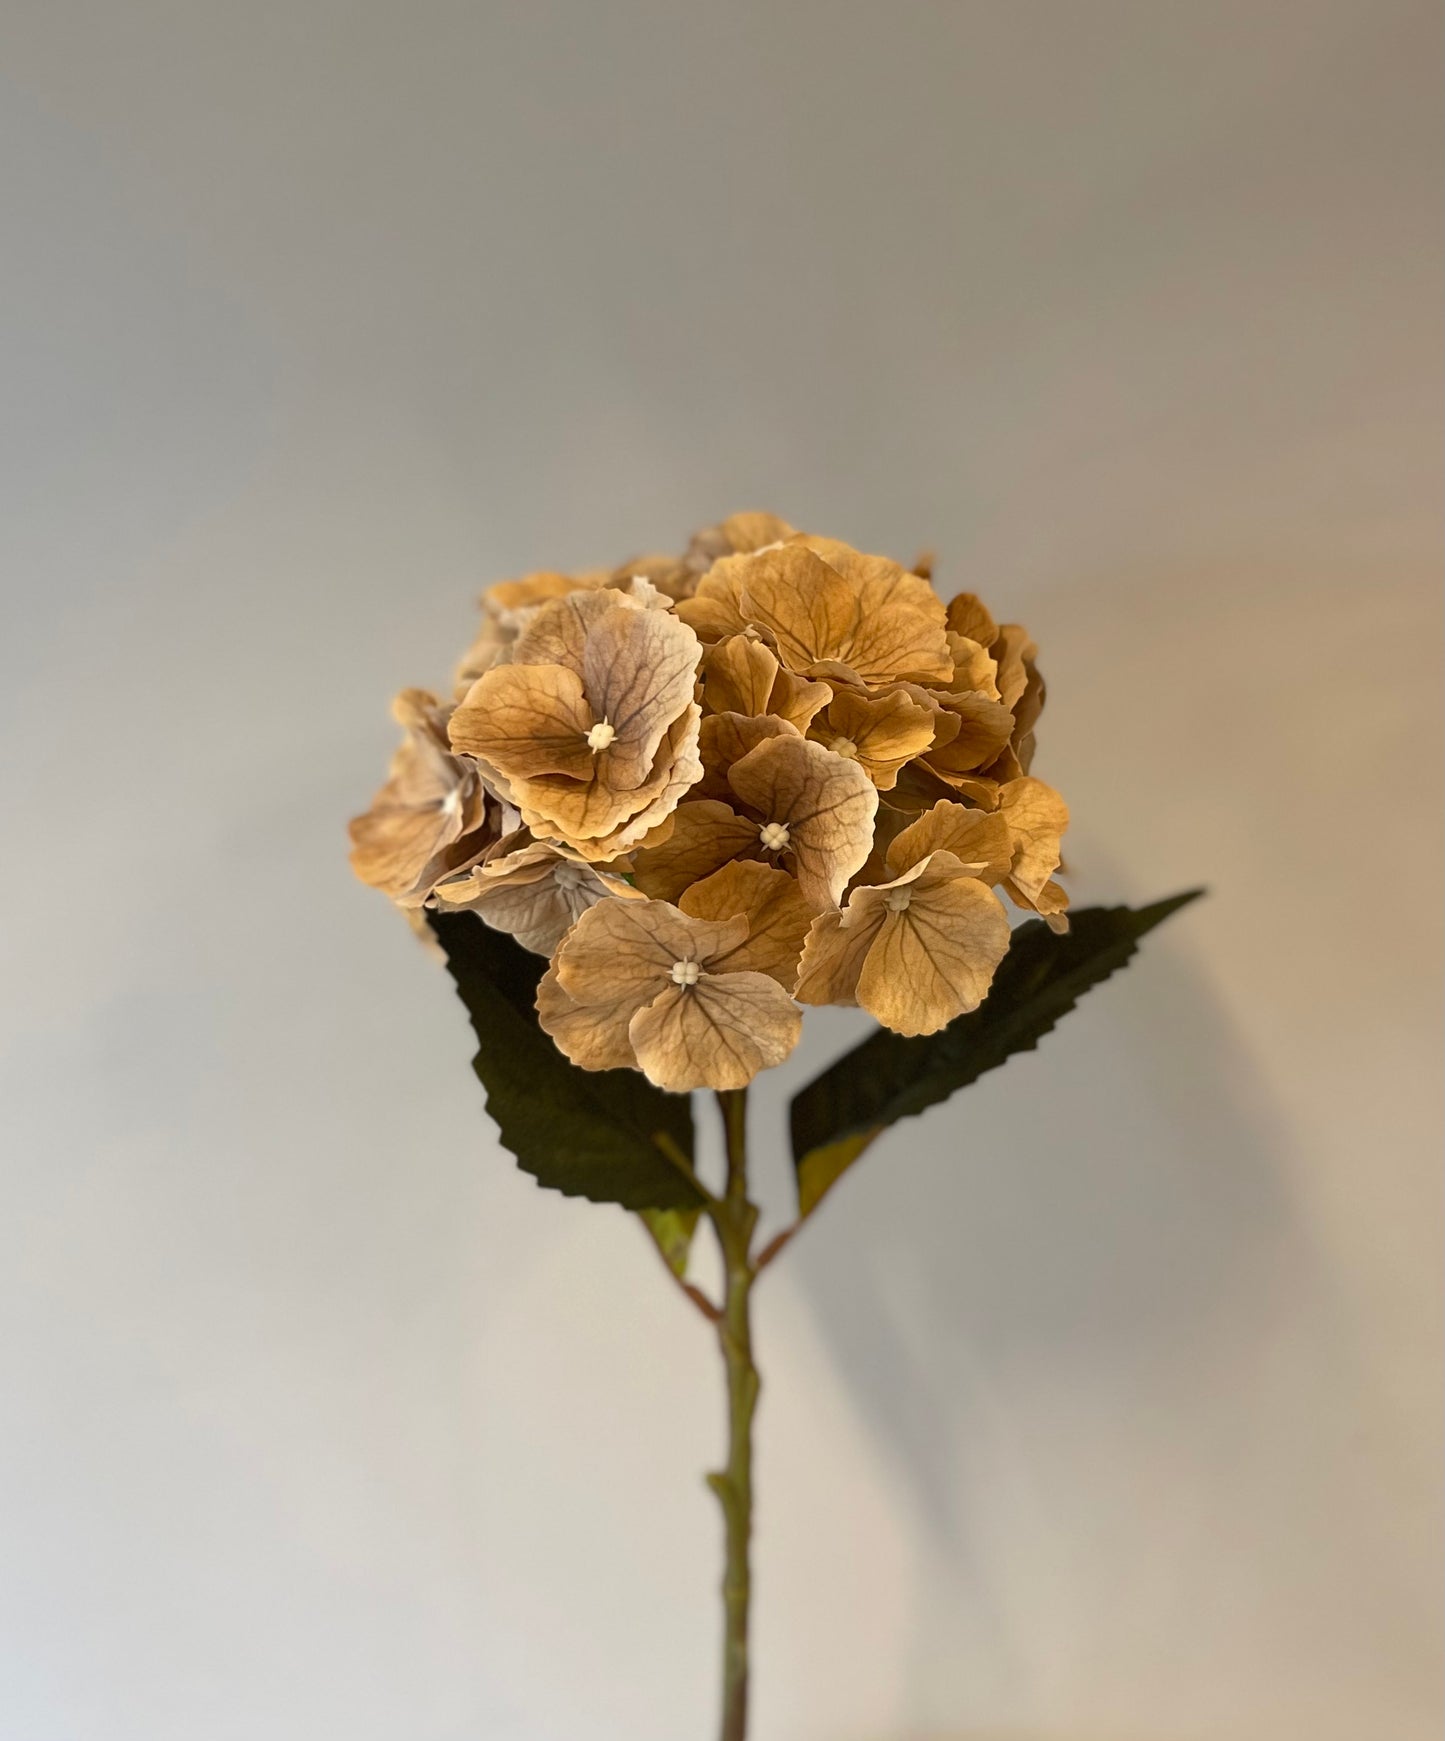 Coffee Silk Hydrangea Single Stem Artificial Flowers Faux Flowers